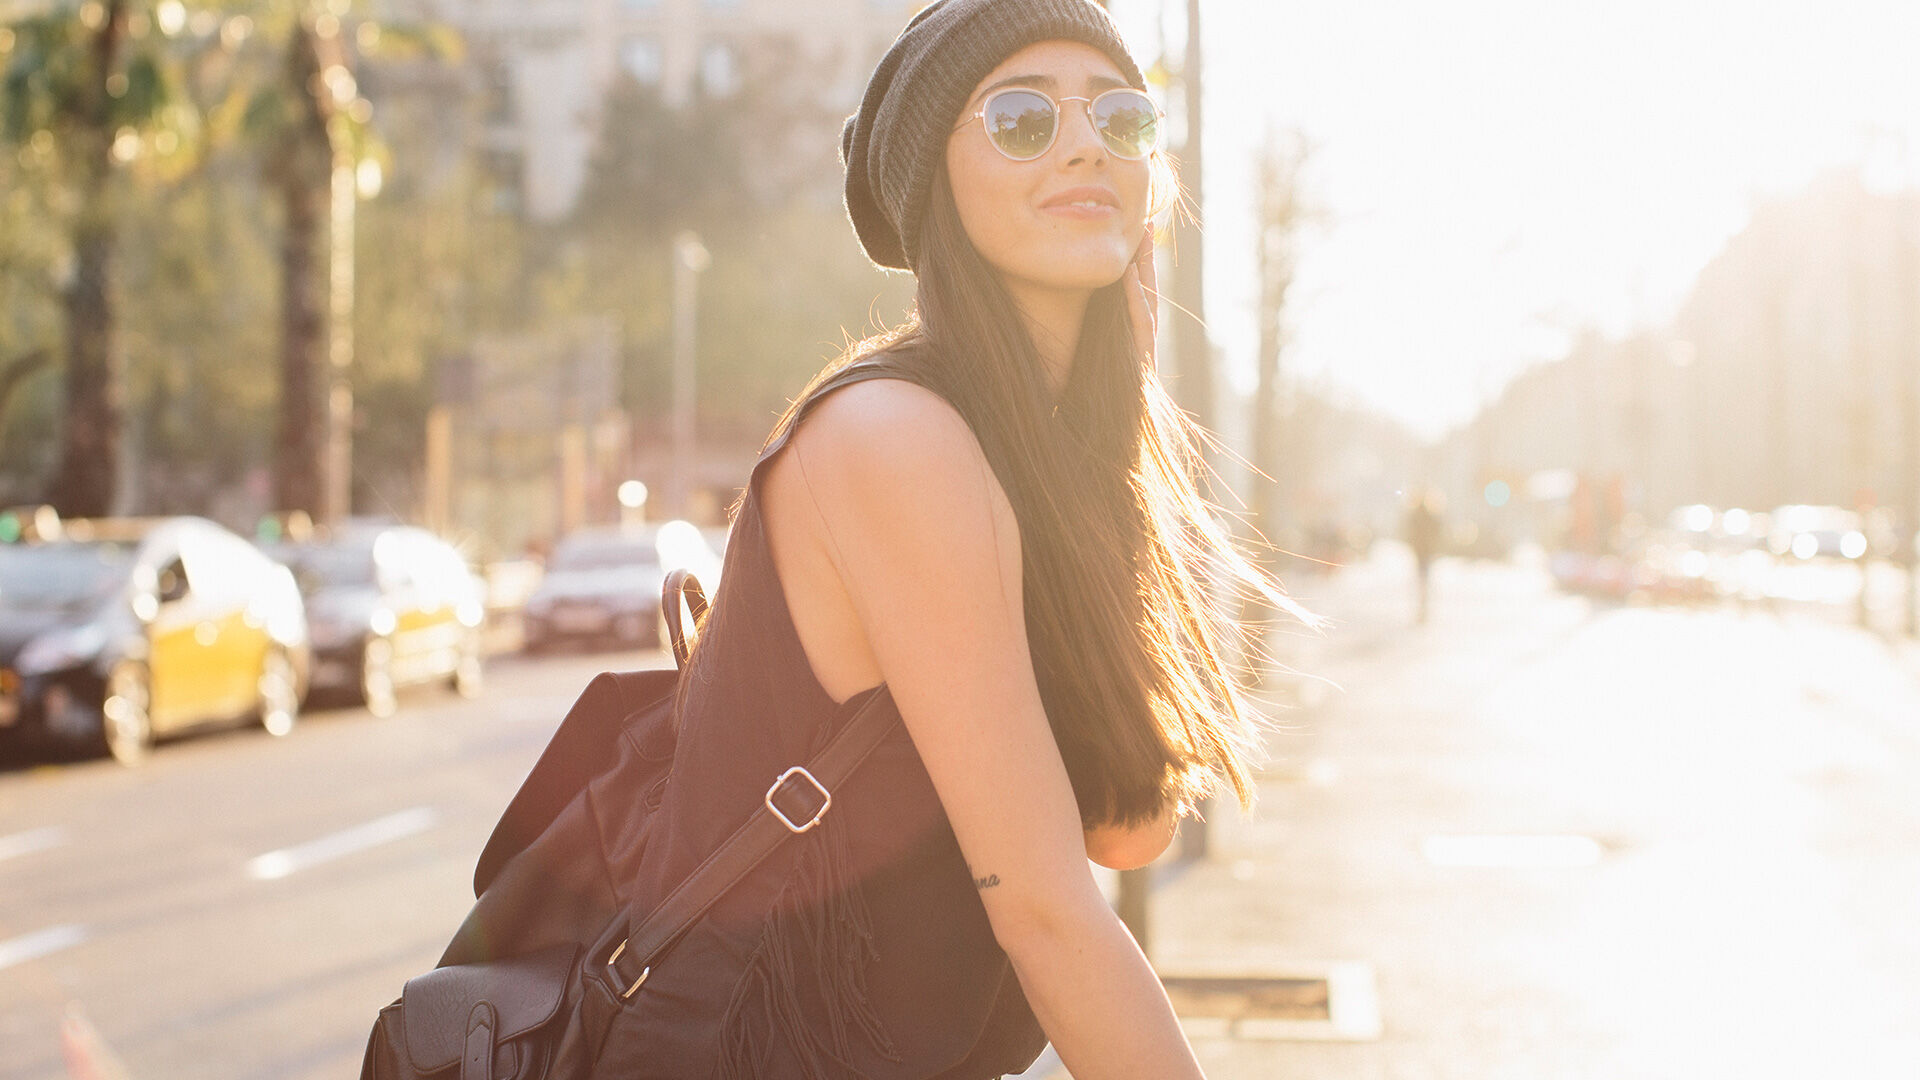 Une femme élégante avec des lunettes de soleil et un bonnet marche dans une rue ensoleillée de la ville, dégageant une ambiance moderne et détendue.